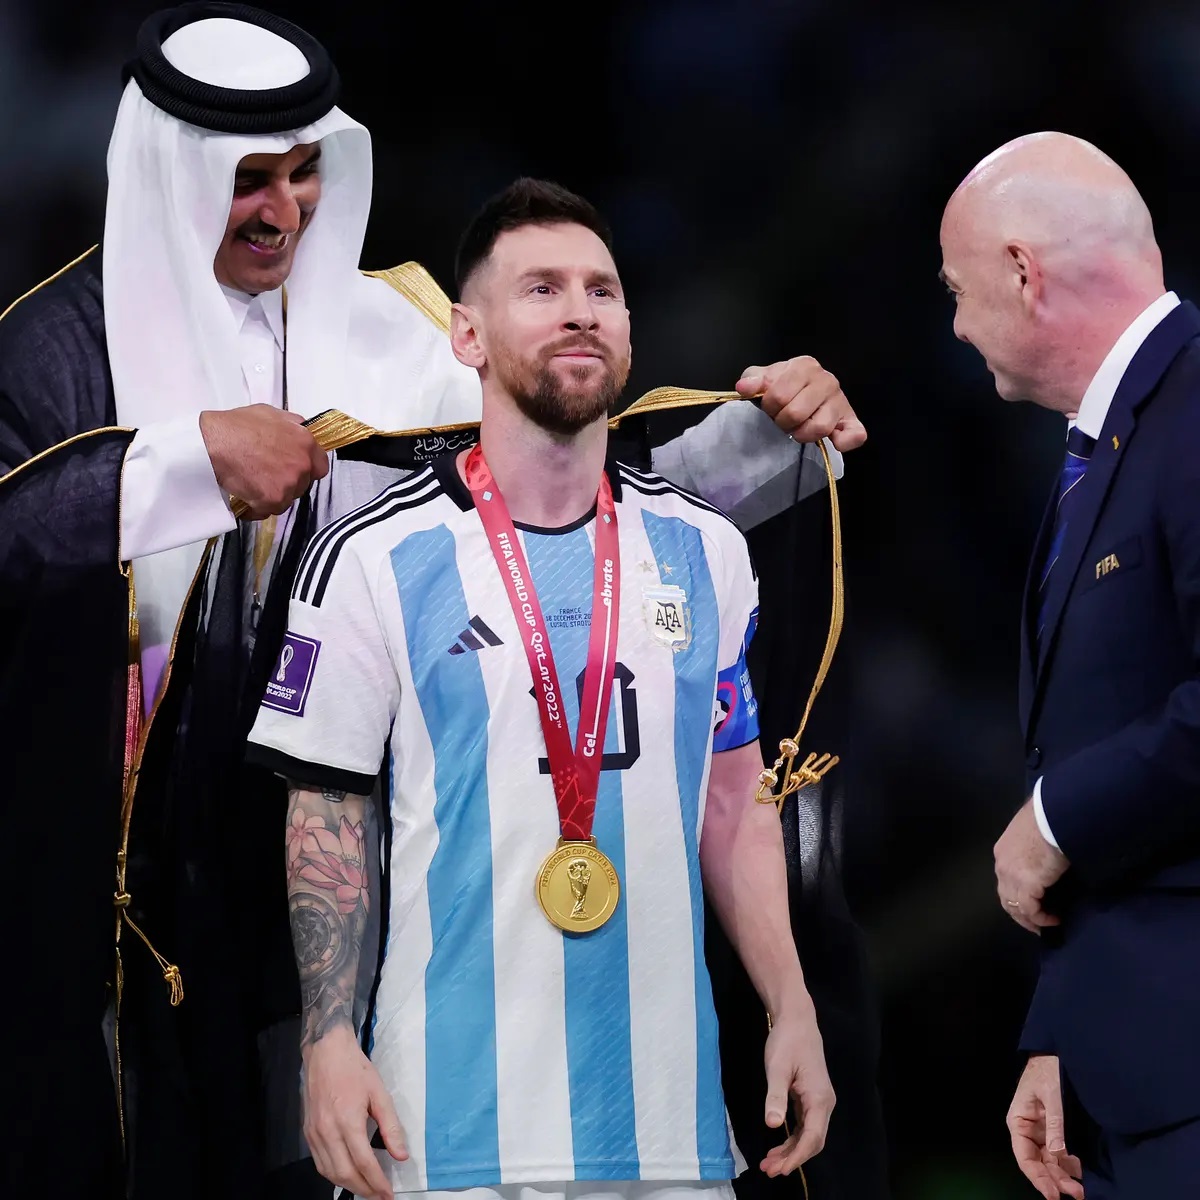 Áo choàng đen - Một biểu tượng của cổ động viên Argentina và của Messi. Điều gì khiến những người hâm mộ này trở nên đặc biệt? Đó là tình yêu và đam mê dành cho bóng đá và đội bóng quê hương. Nếu bạn yêu thích bóng đá và Messi, hãy chọn xem hình ảnh này.